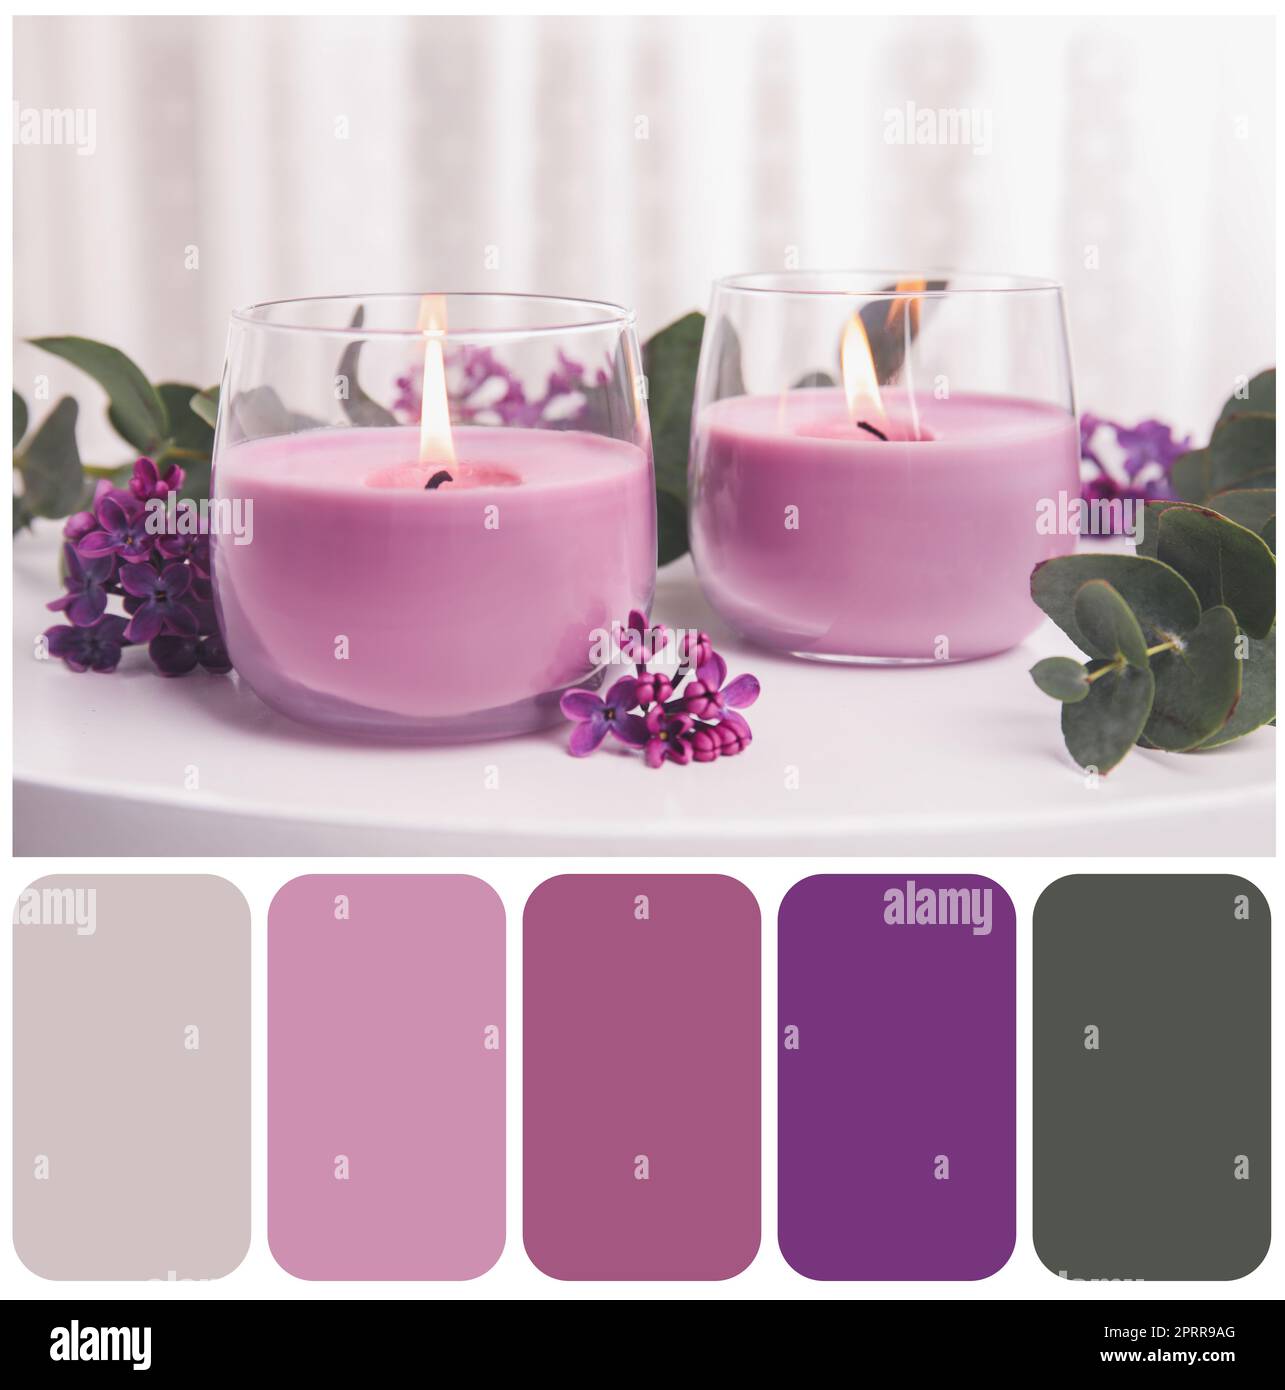 Palette de couleurs adaptée à la photo de bougies allumées dans des supports en verre et de fleurs sur une table blanche Banque D'Images